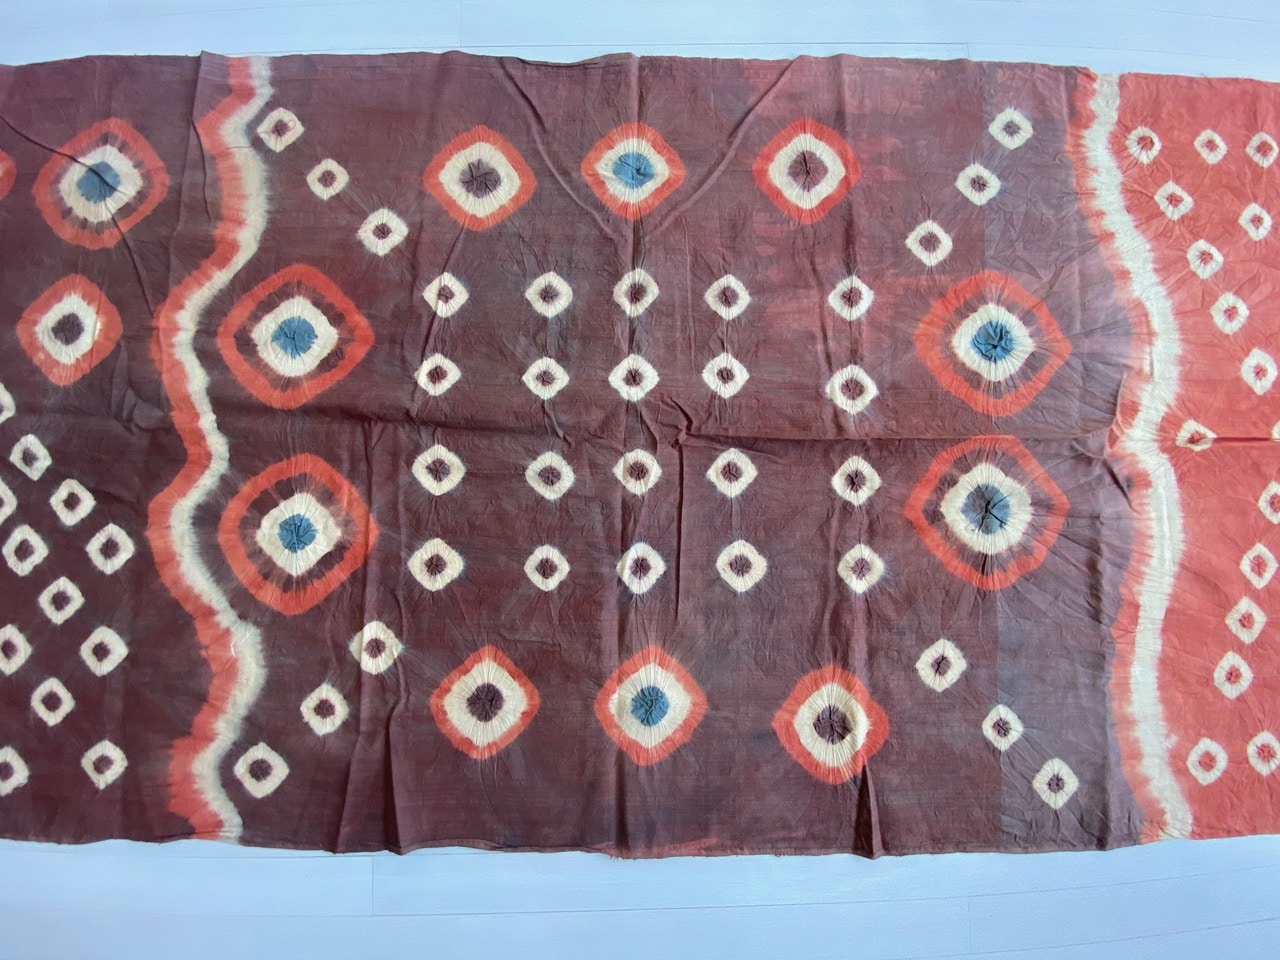 ‘pelangi’ tie-dyed textile from Toraja Land